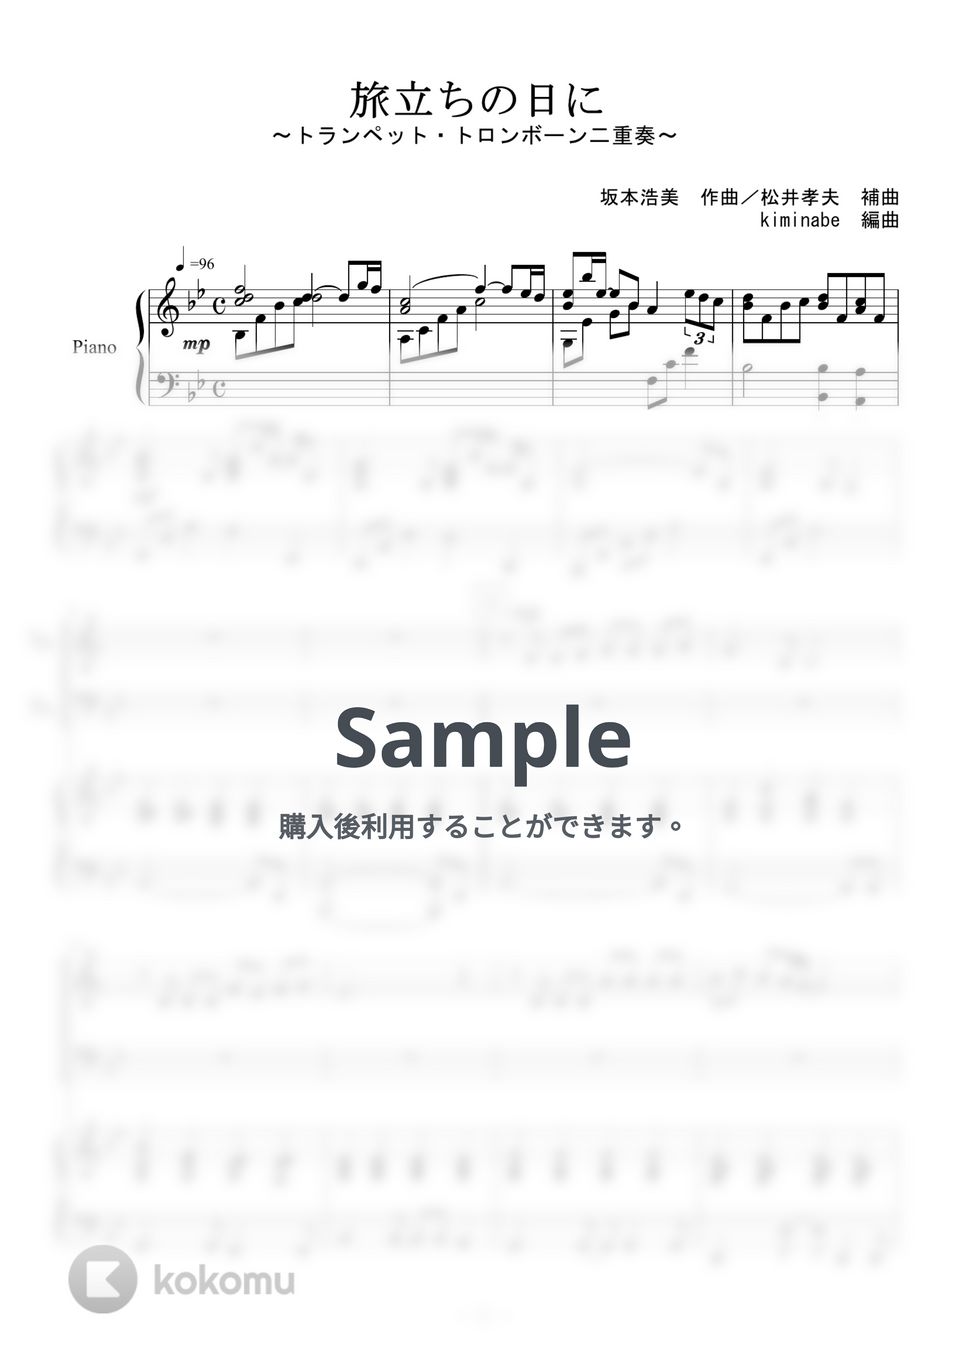 坂本浩美 - 旅立ちの日に (トランペット・トロンボーン二重奏) by kiminabe